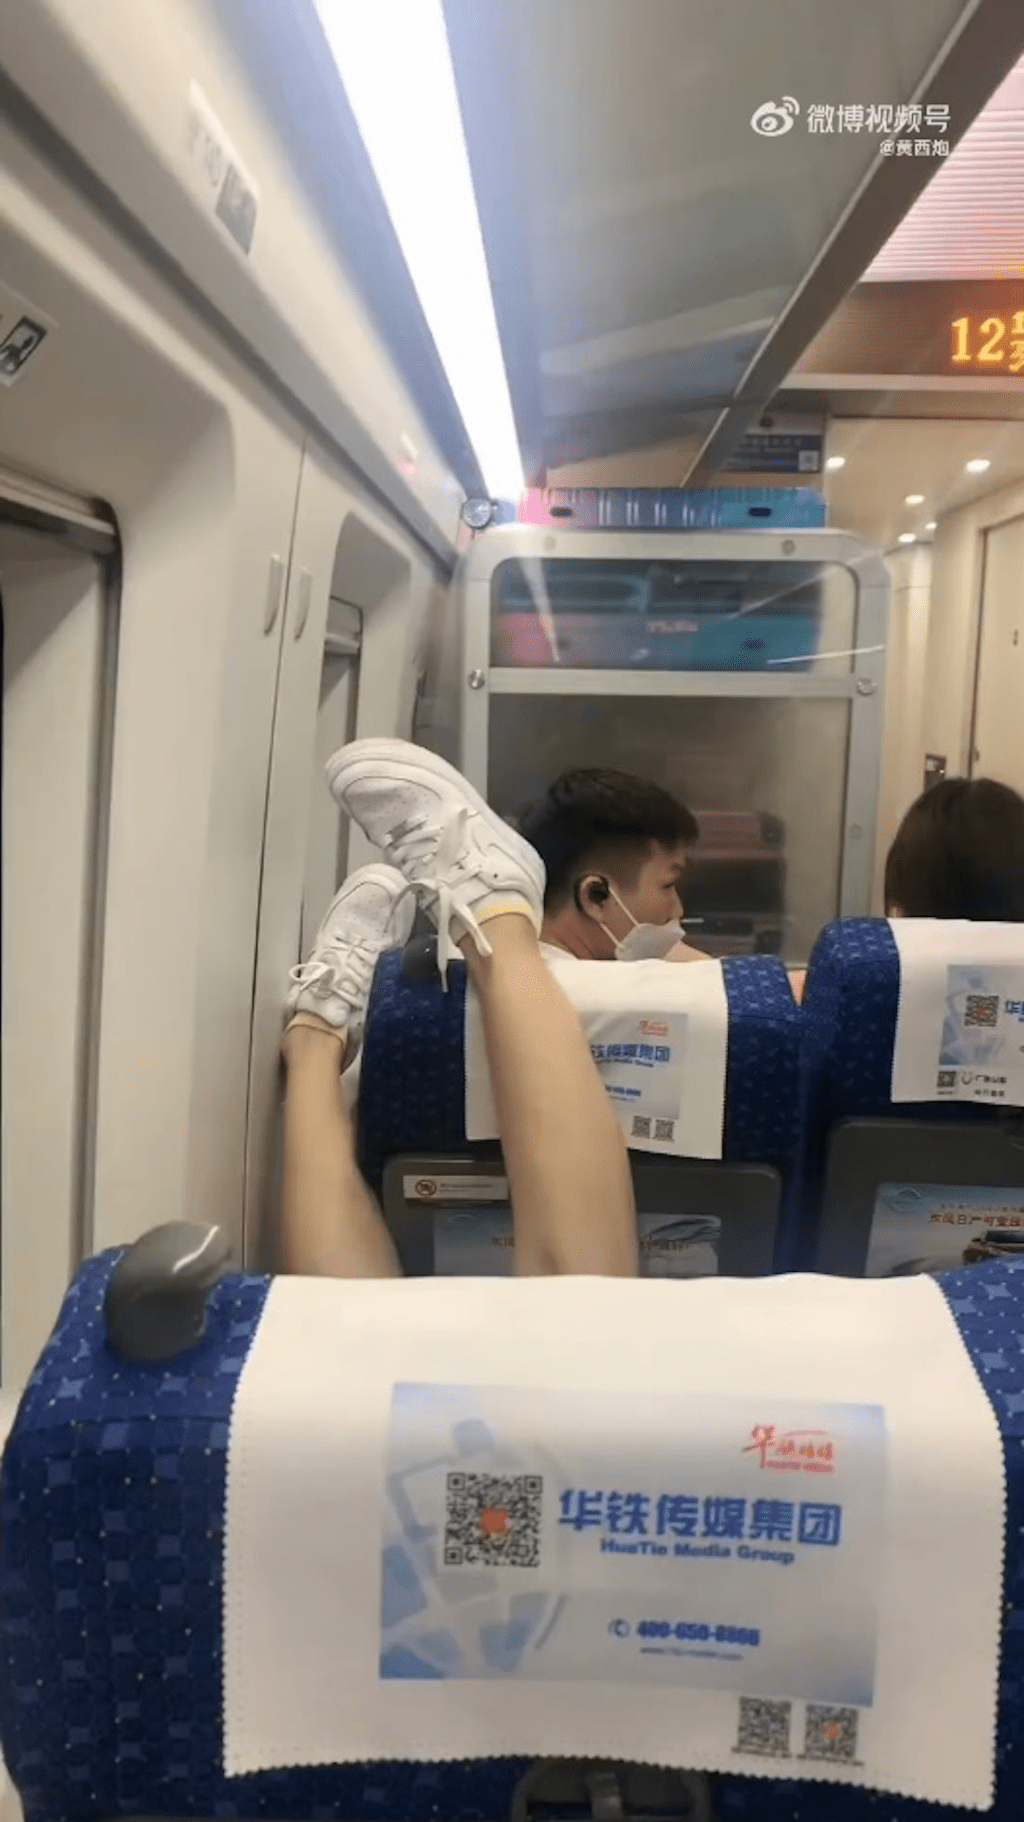 一名女子在高鐵上將腿高高翹起，放在前排乘客頭上，網上引發熱議。